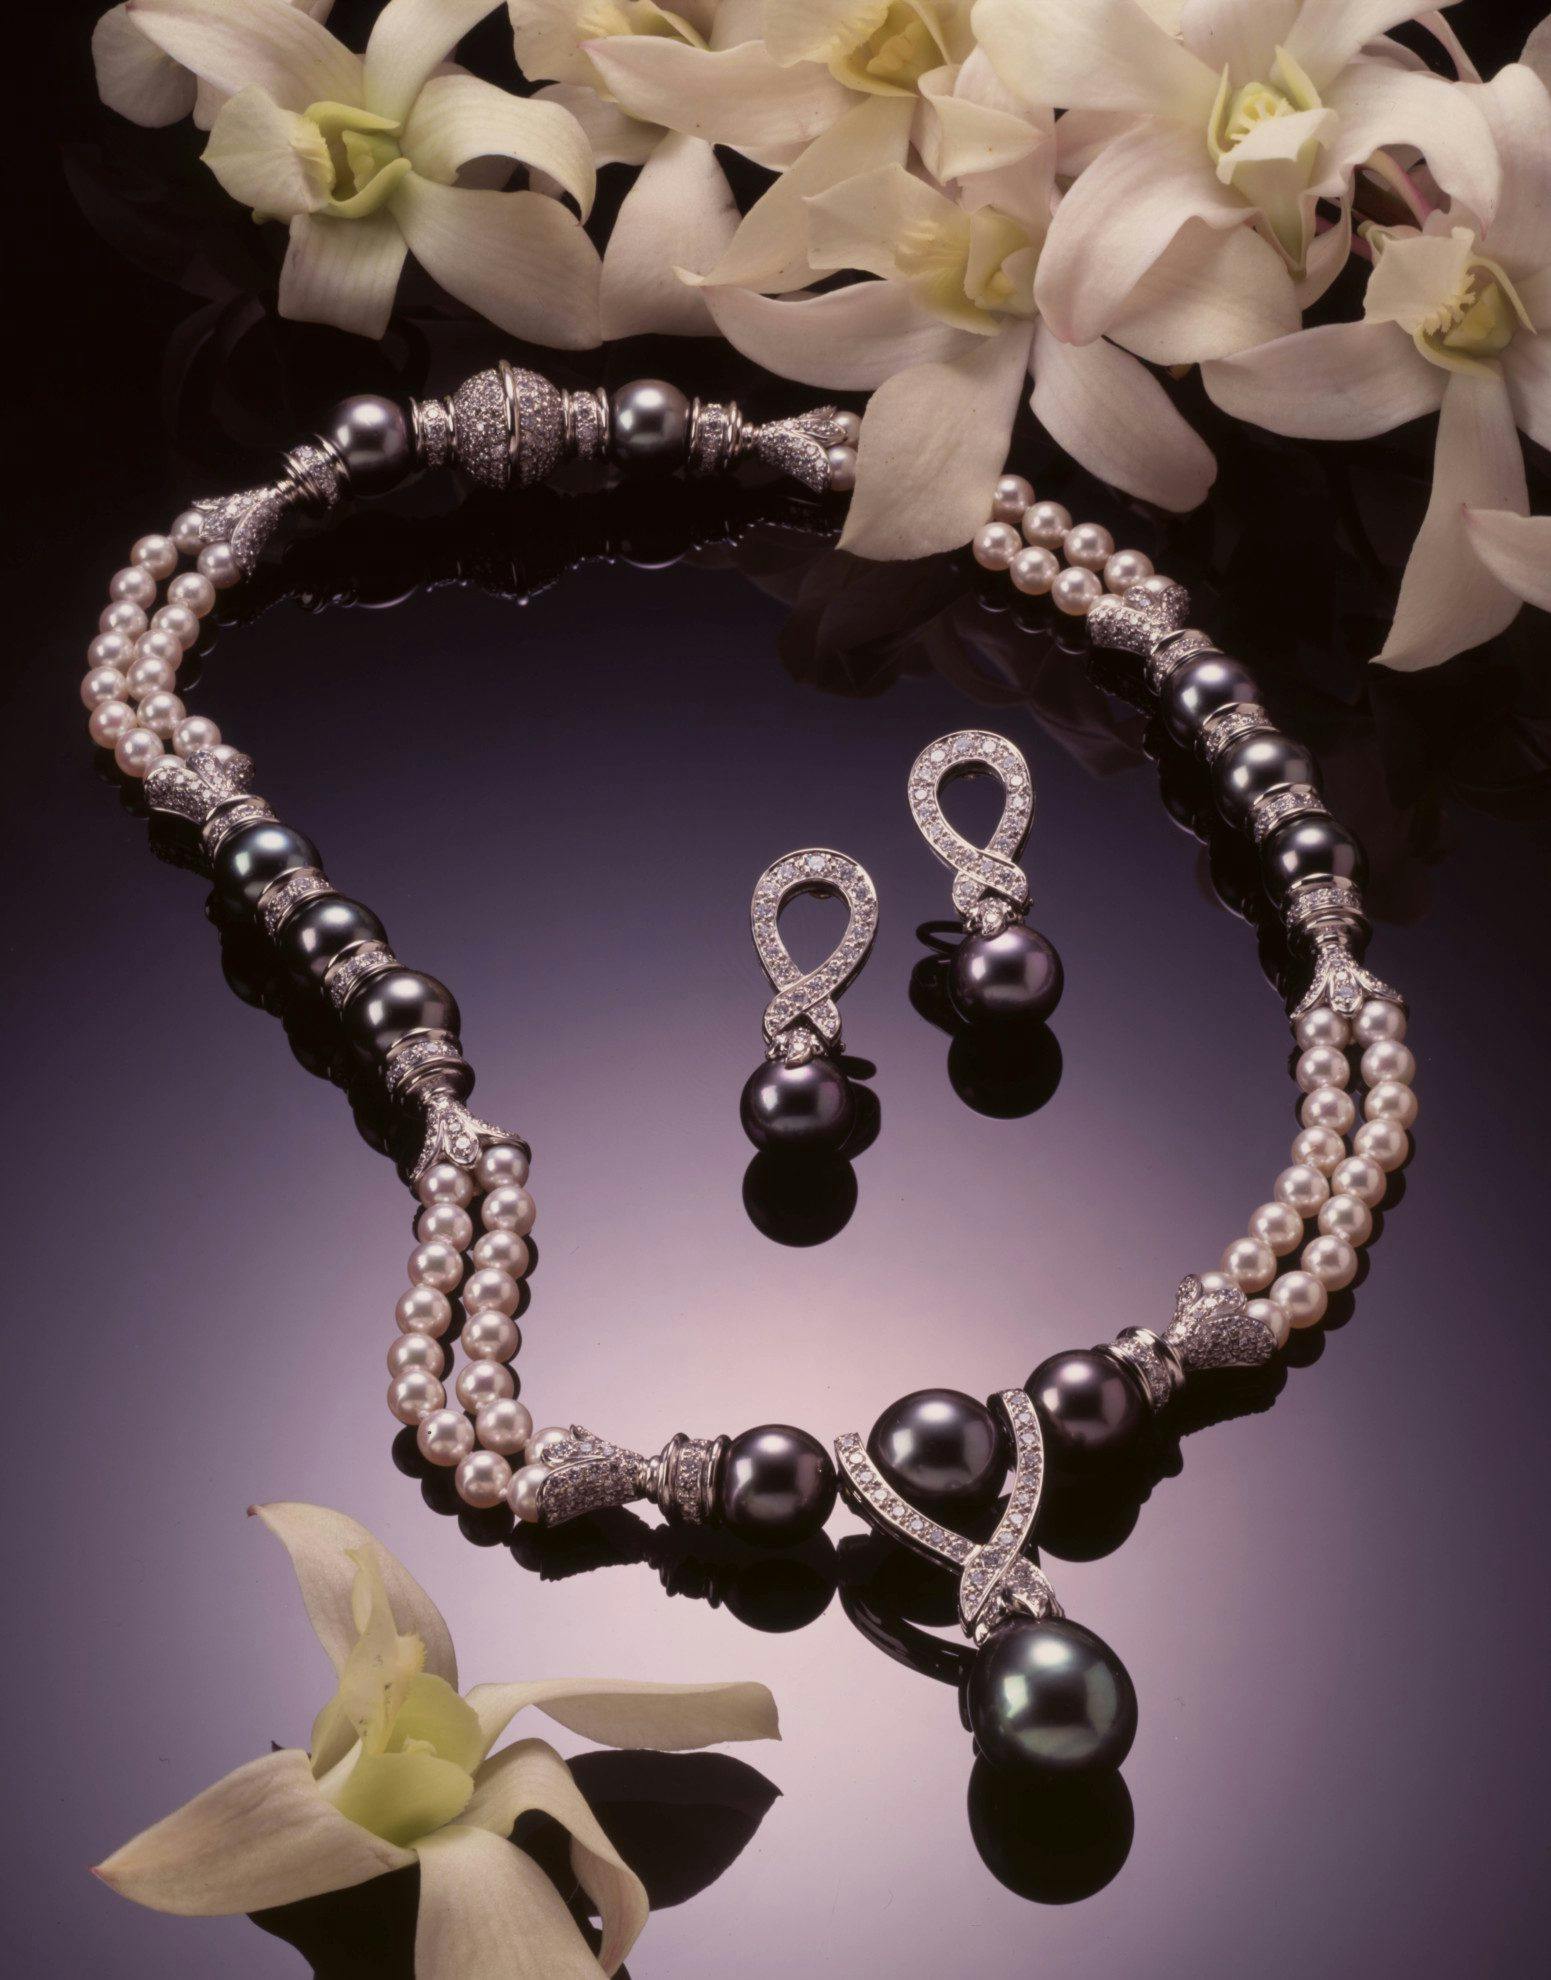 Tahitian pearls jewelry design for Robert Wan